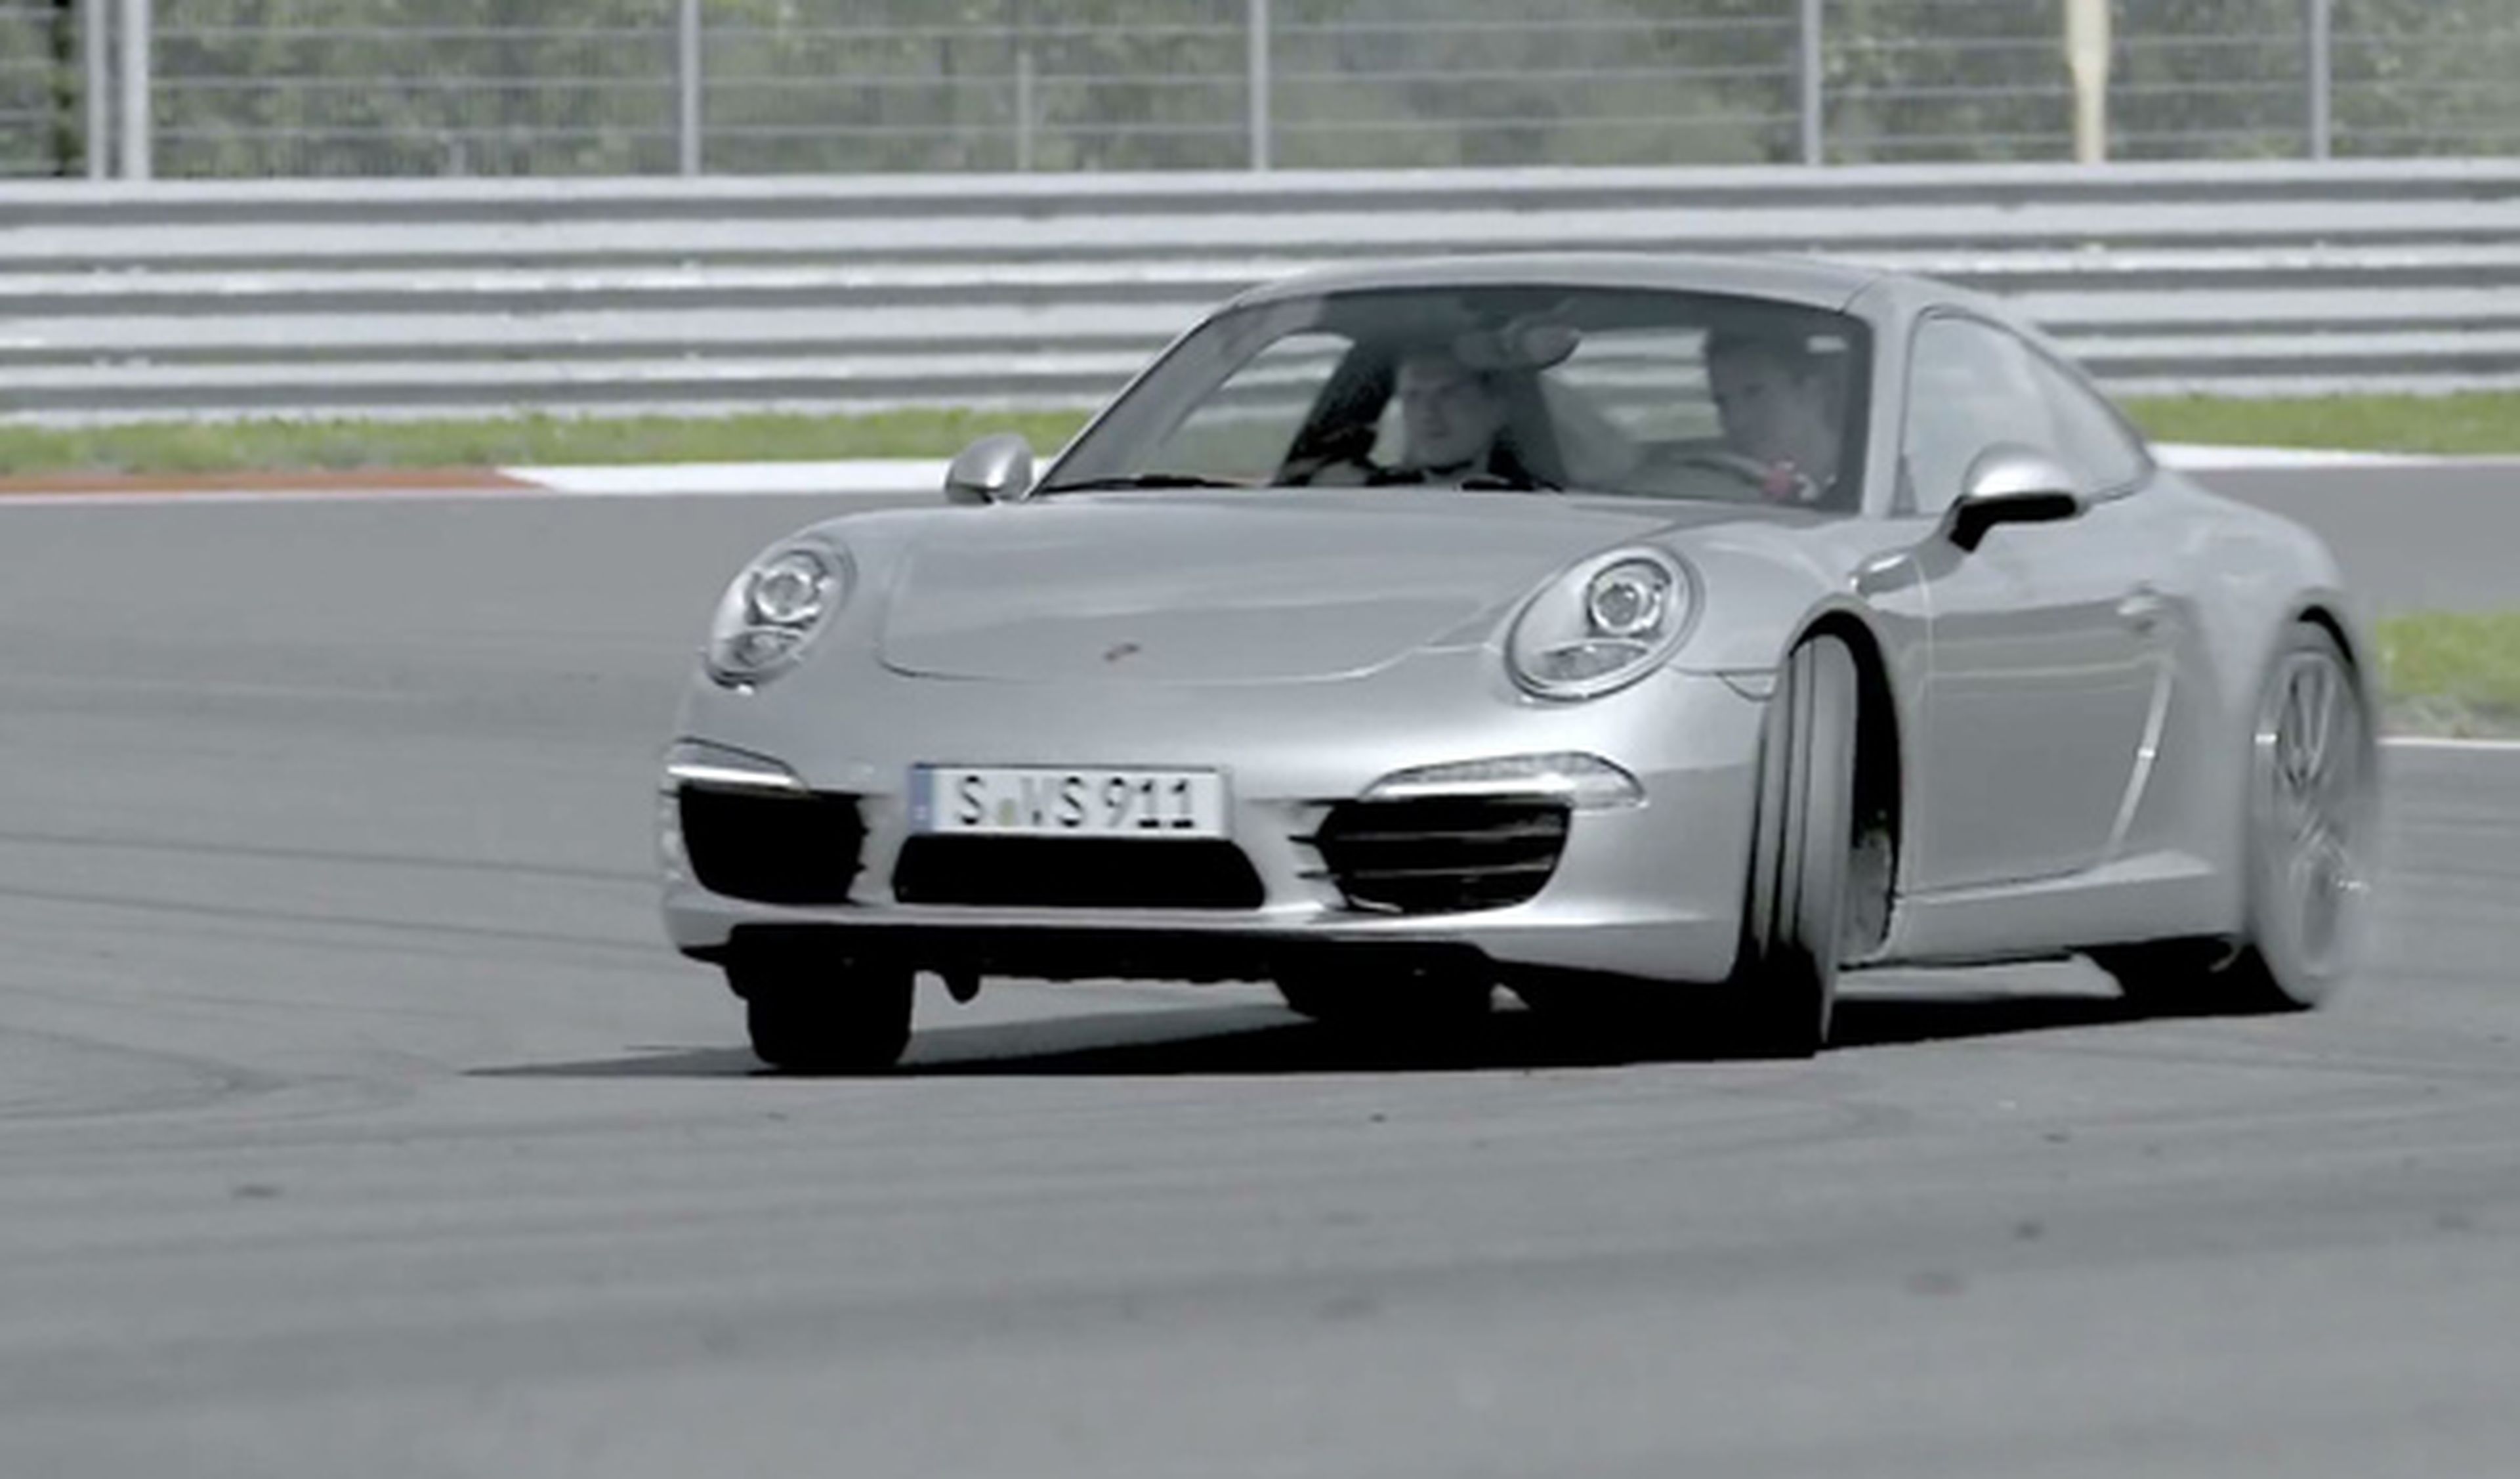 Copilota un Porsche en su circuito de Leipzig desde 98 €